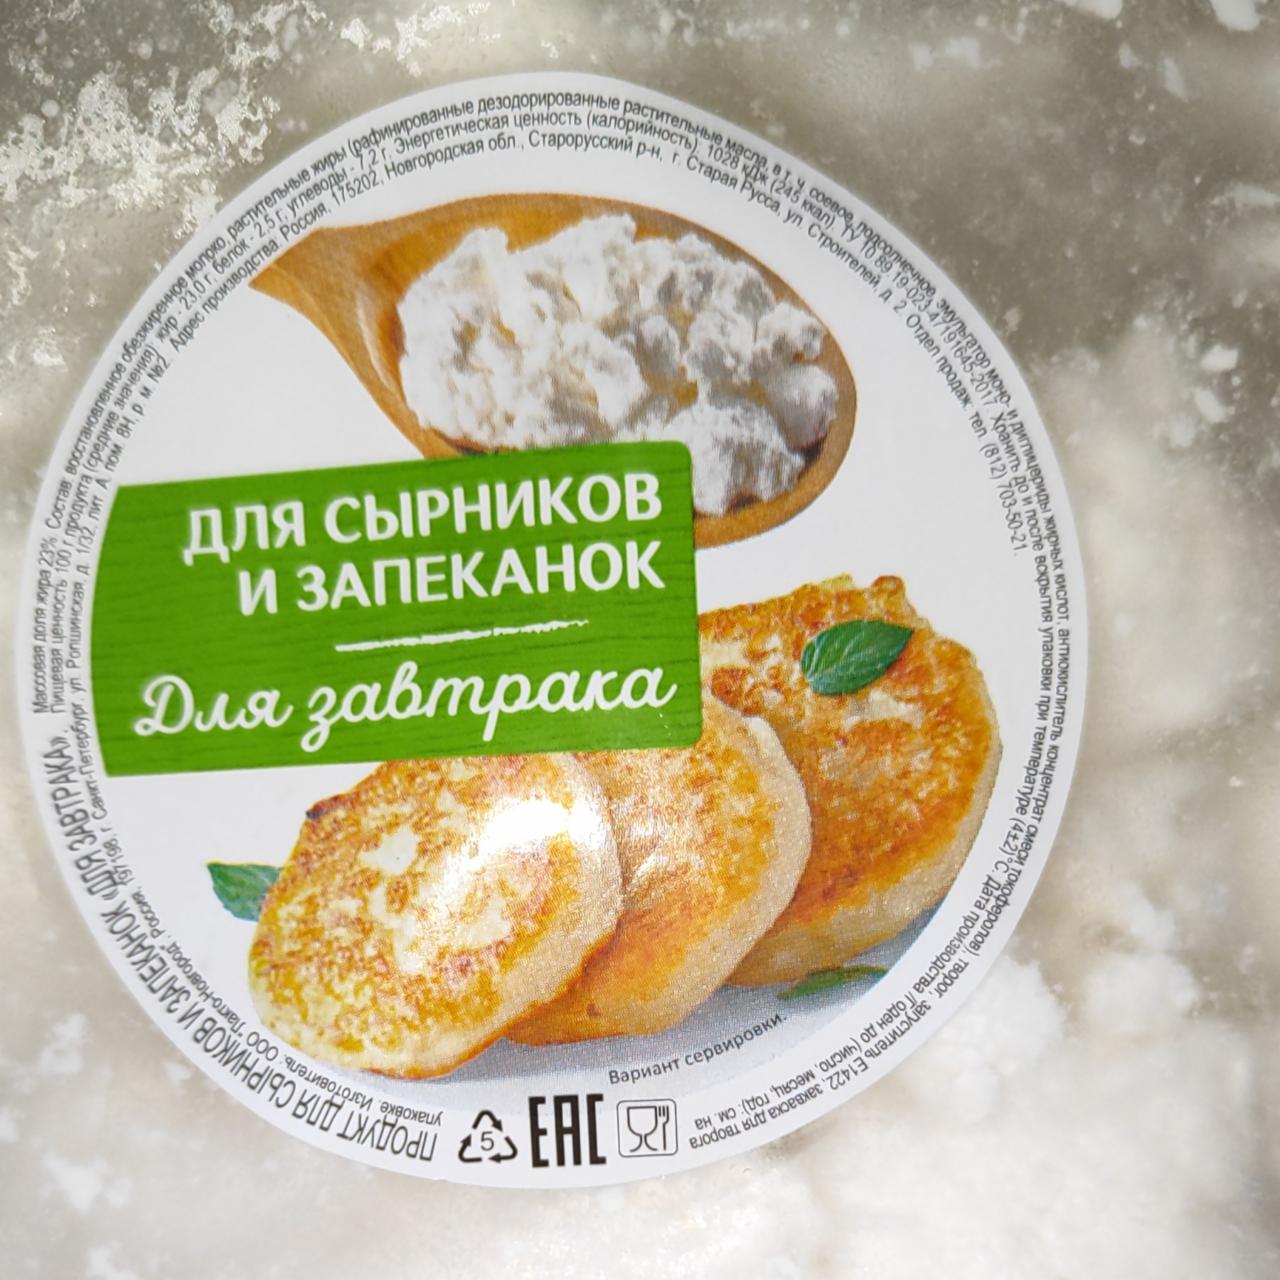 Фото - Продукт для сырников и запеканок для завтрака ООО Лакто-Новгород